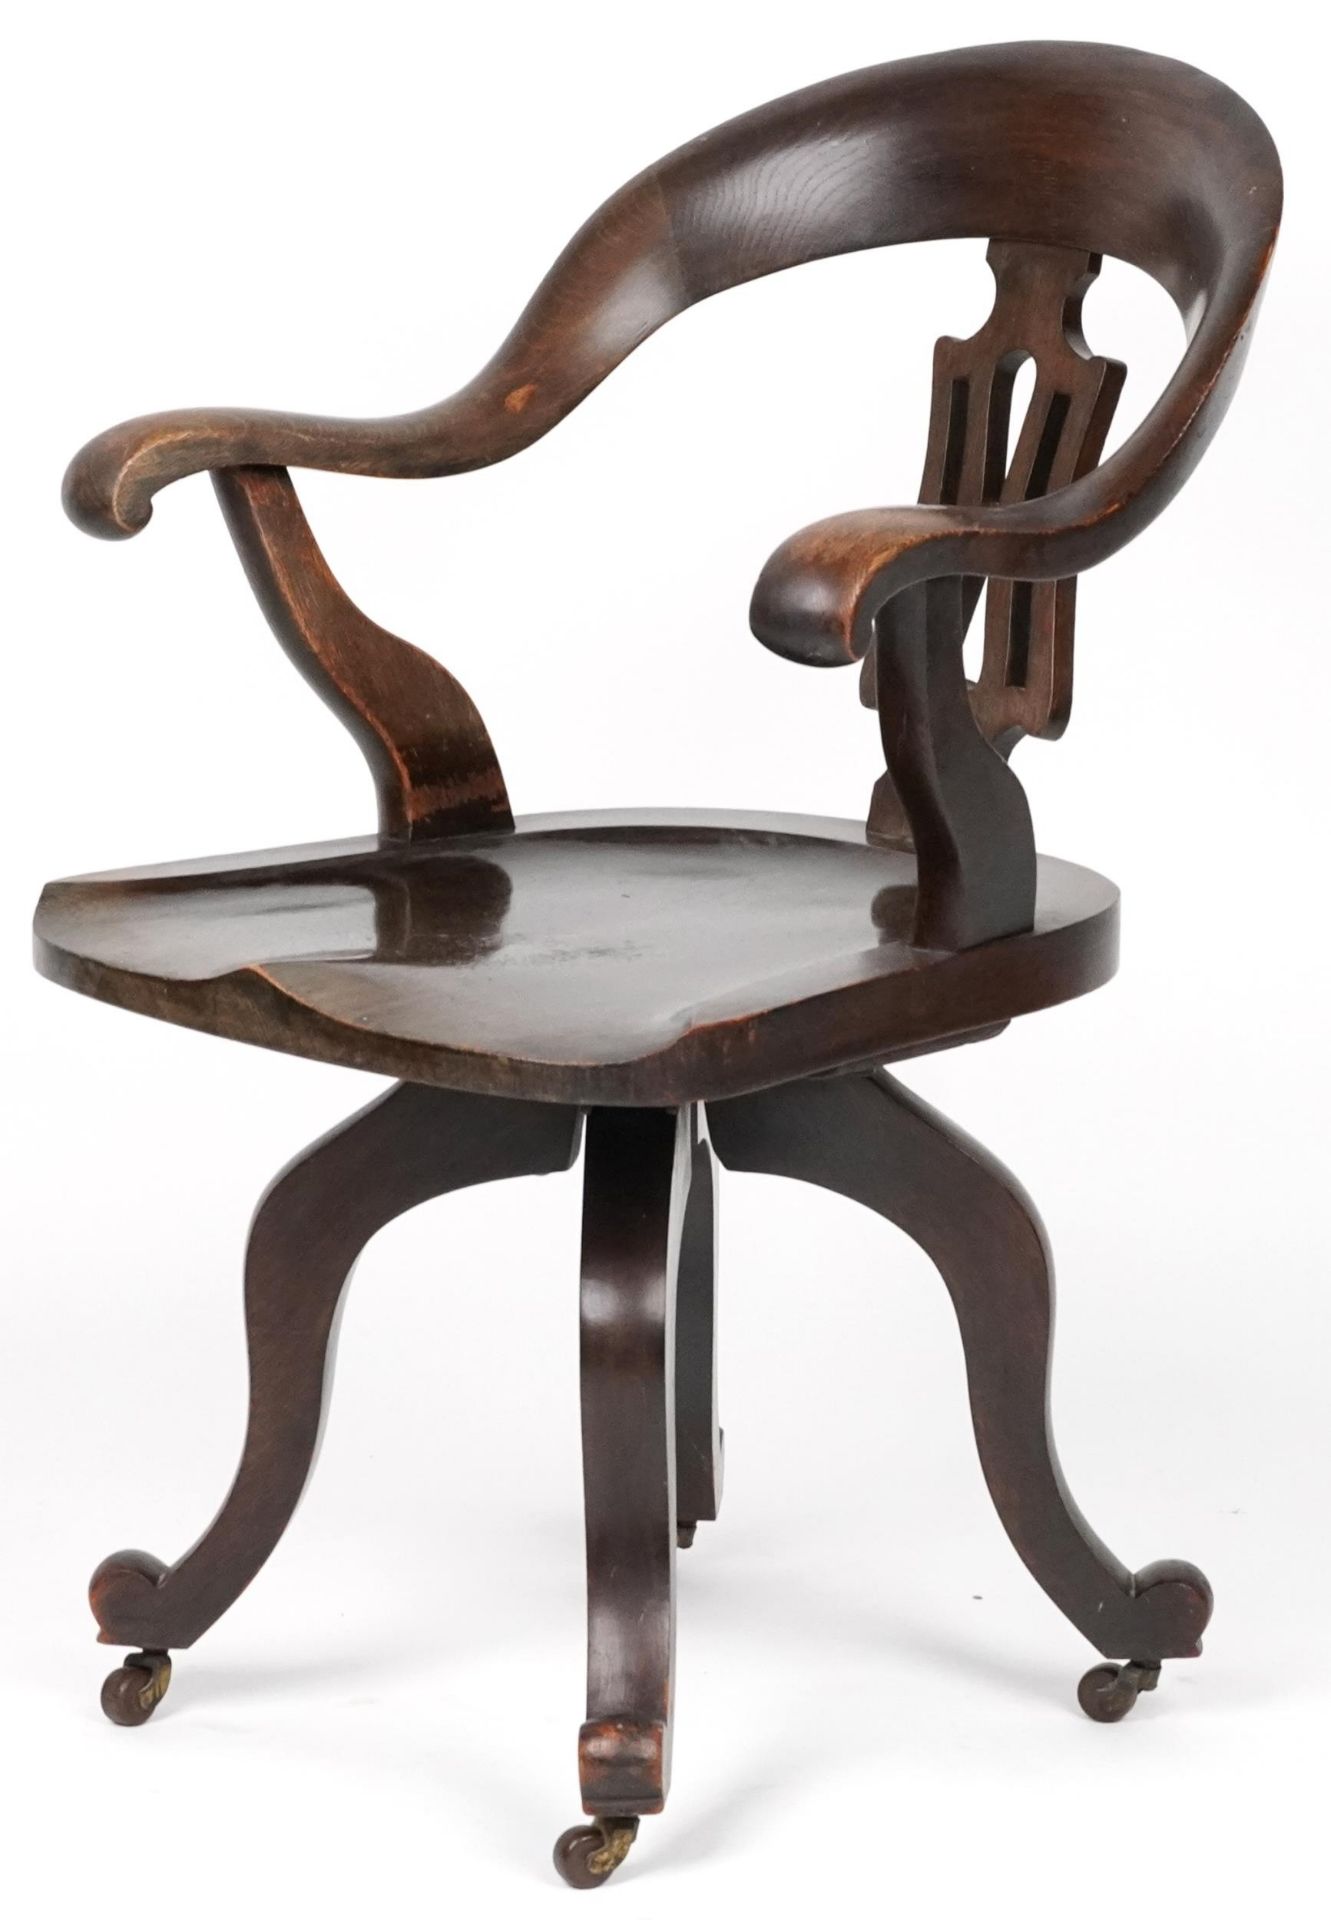 Antique oak captain's chair, 88cm high